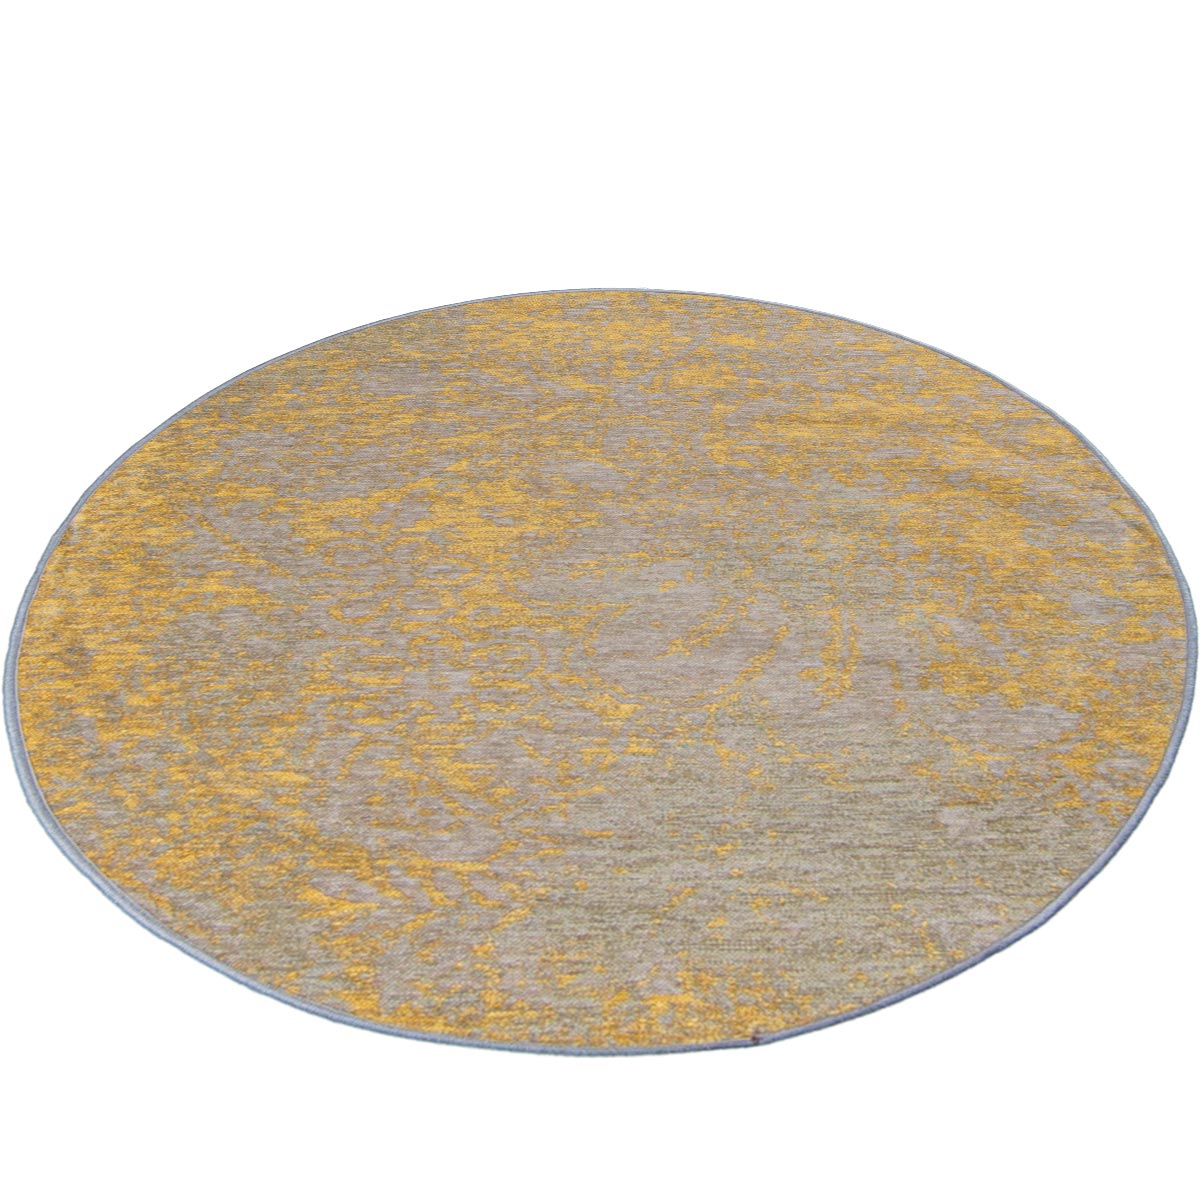 שטיח מרסיי 29 צהוב/אפור עגול | השטיח האדום